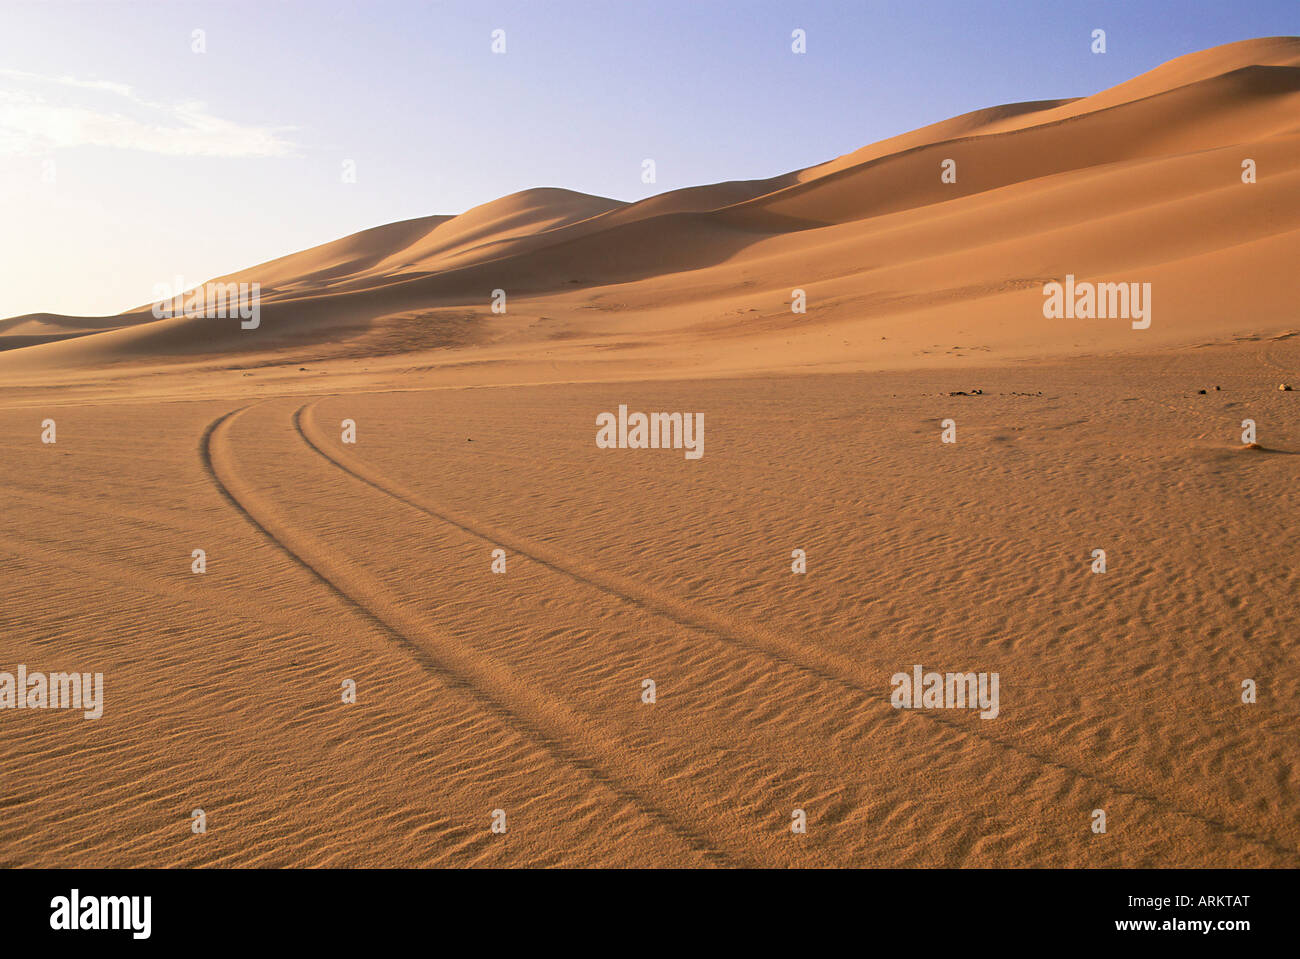 Vehicle tracks and sand dunes, Erg Murzuq, Sahara Desert, Fezzan, Libya, North Africa, Africa Stock Photo